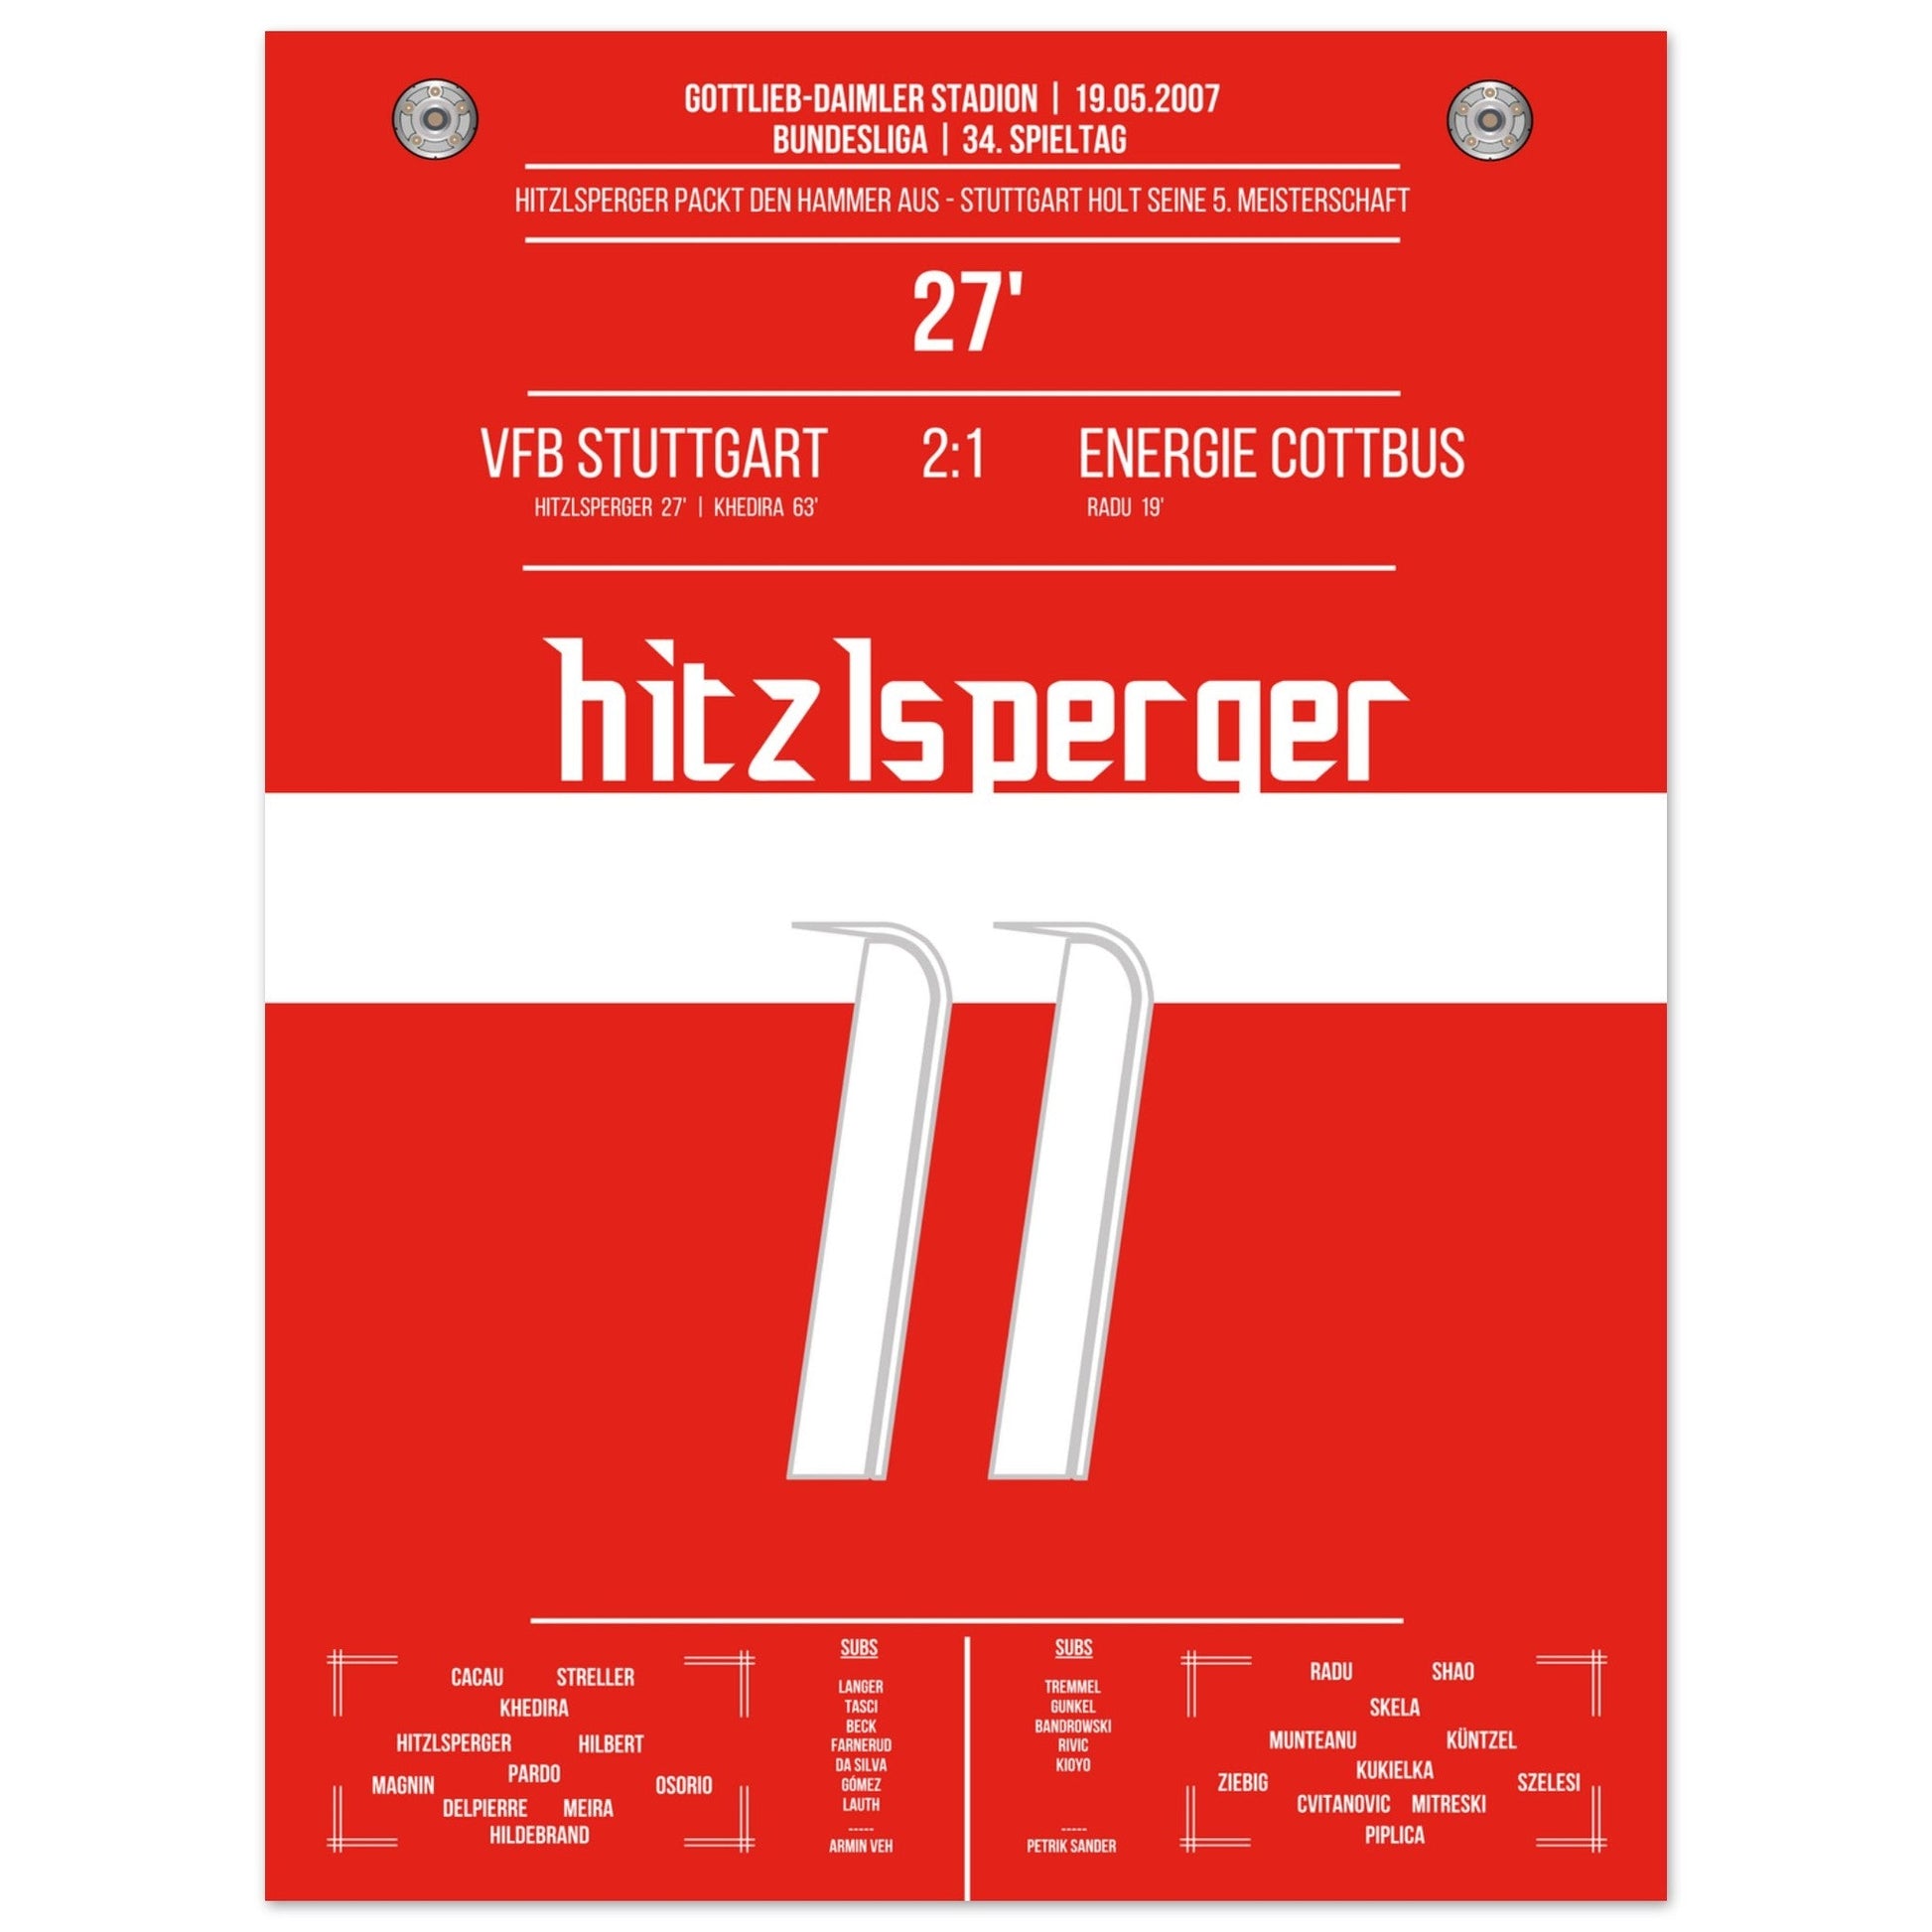 Hitzlsperger-Hammer bei Stuttgart's Gewinn der Meisterschaft 2007 45x60-cm-18x24-Ohne-Rahmen